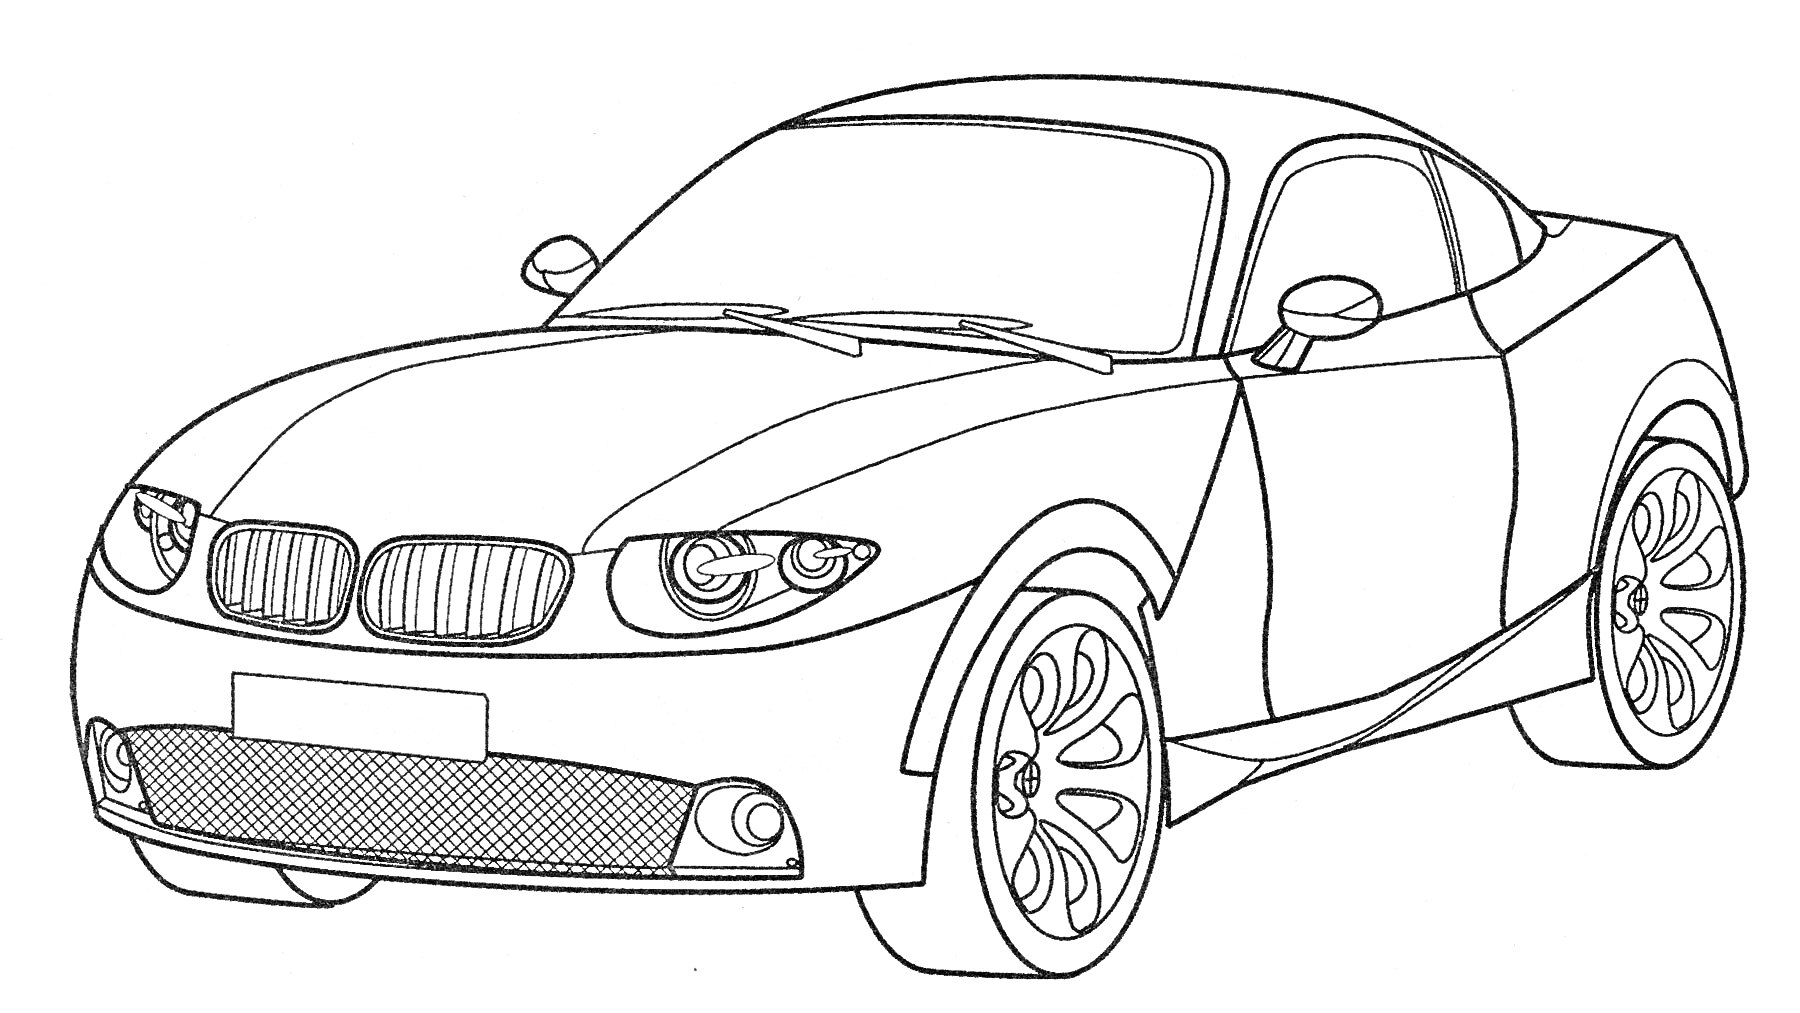 BMW автомобиль с рельефными фарами, зеркалами заднего вида, колёсами и двухдверным кузовом